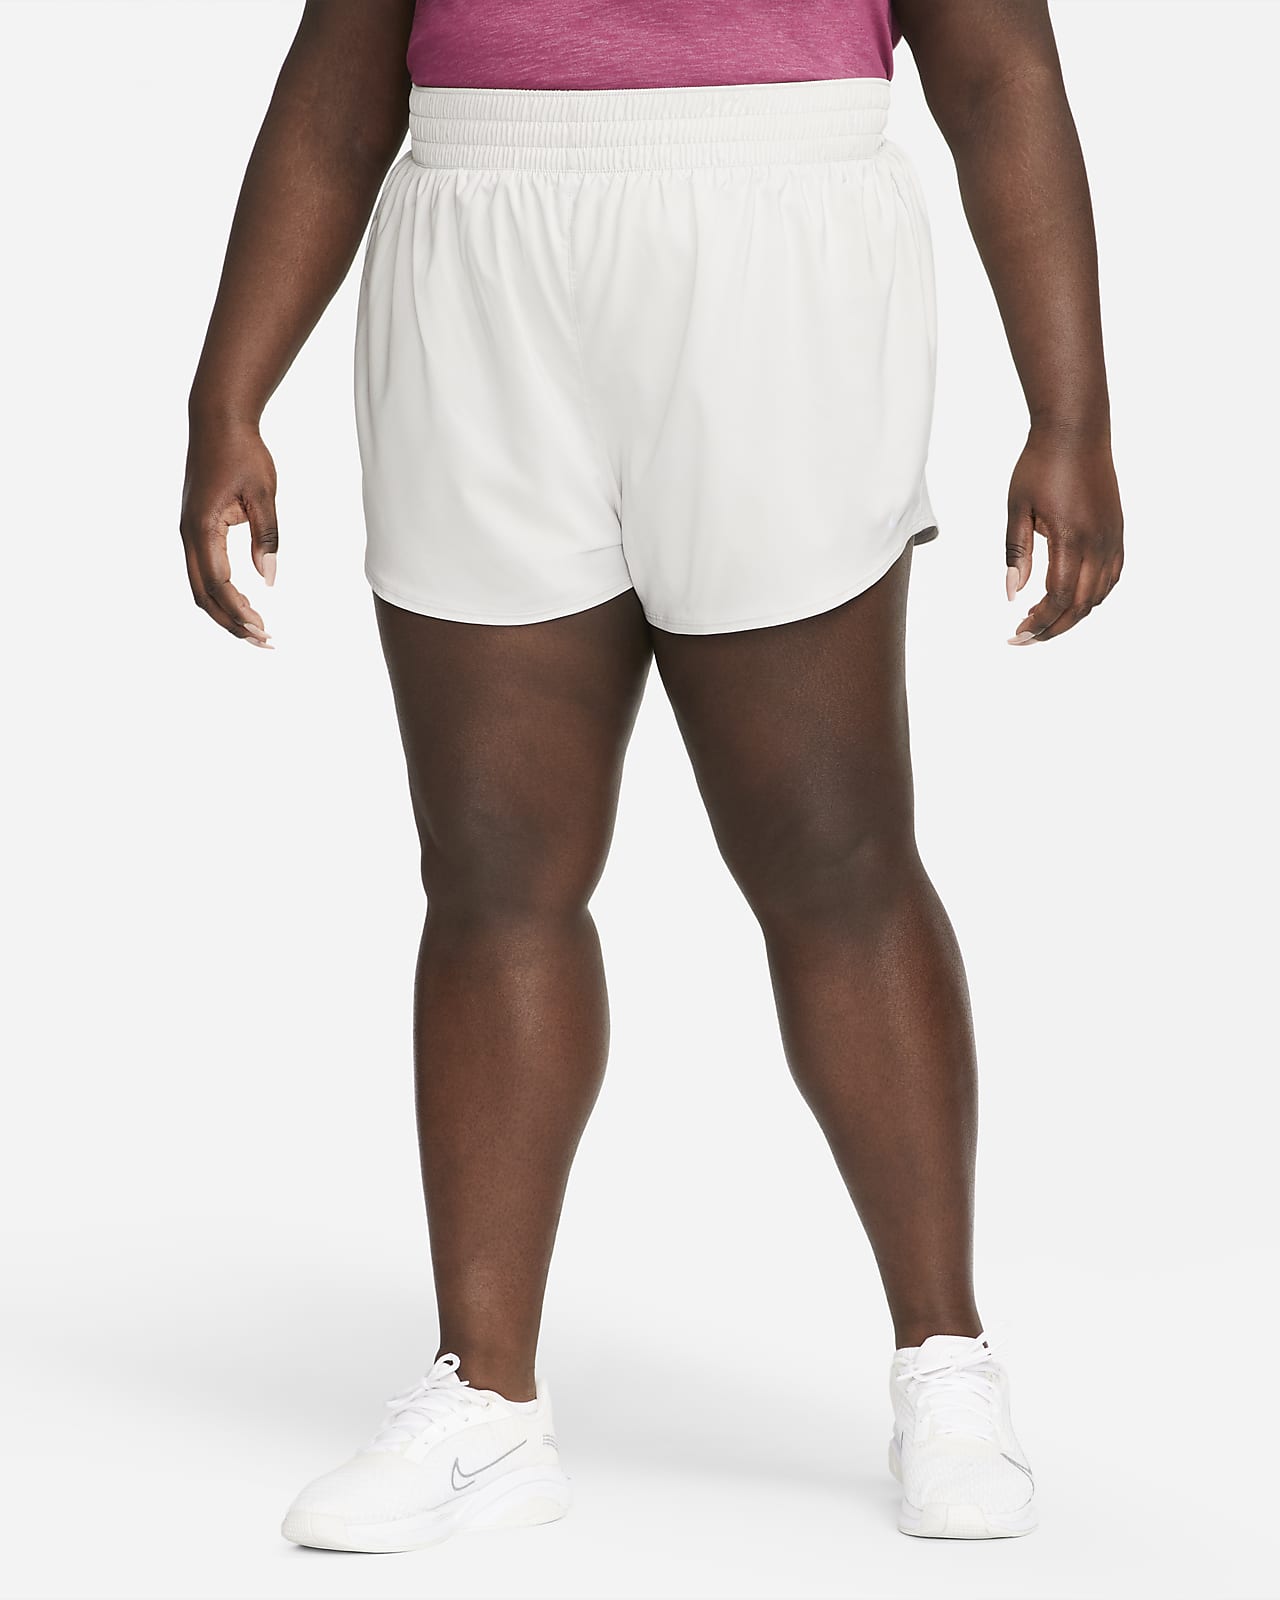 Shorts tiro alto de 8 cm con ropa integrada para mujer (talla grande) Nike Dri-FIT Nike.com